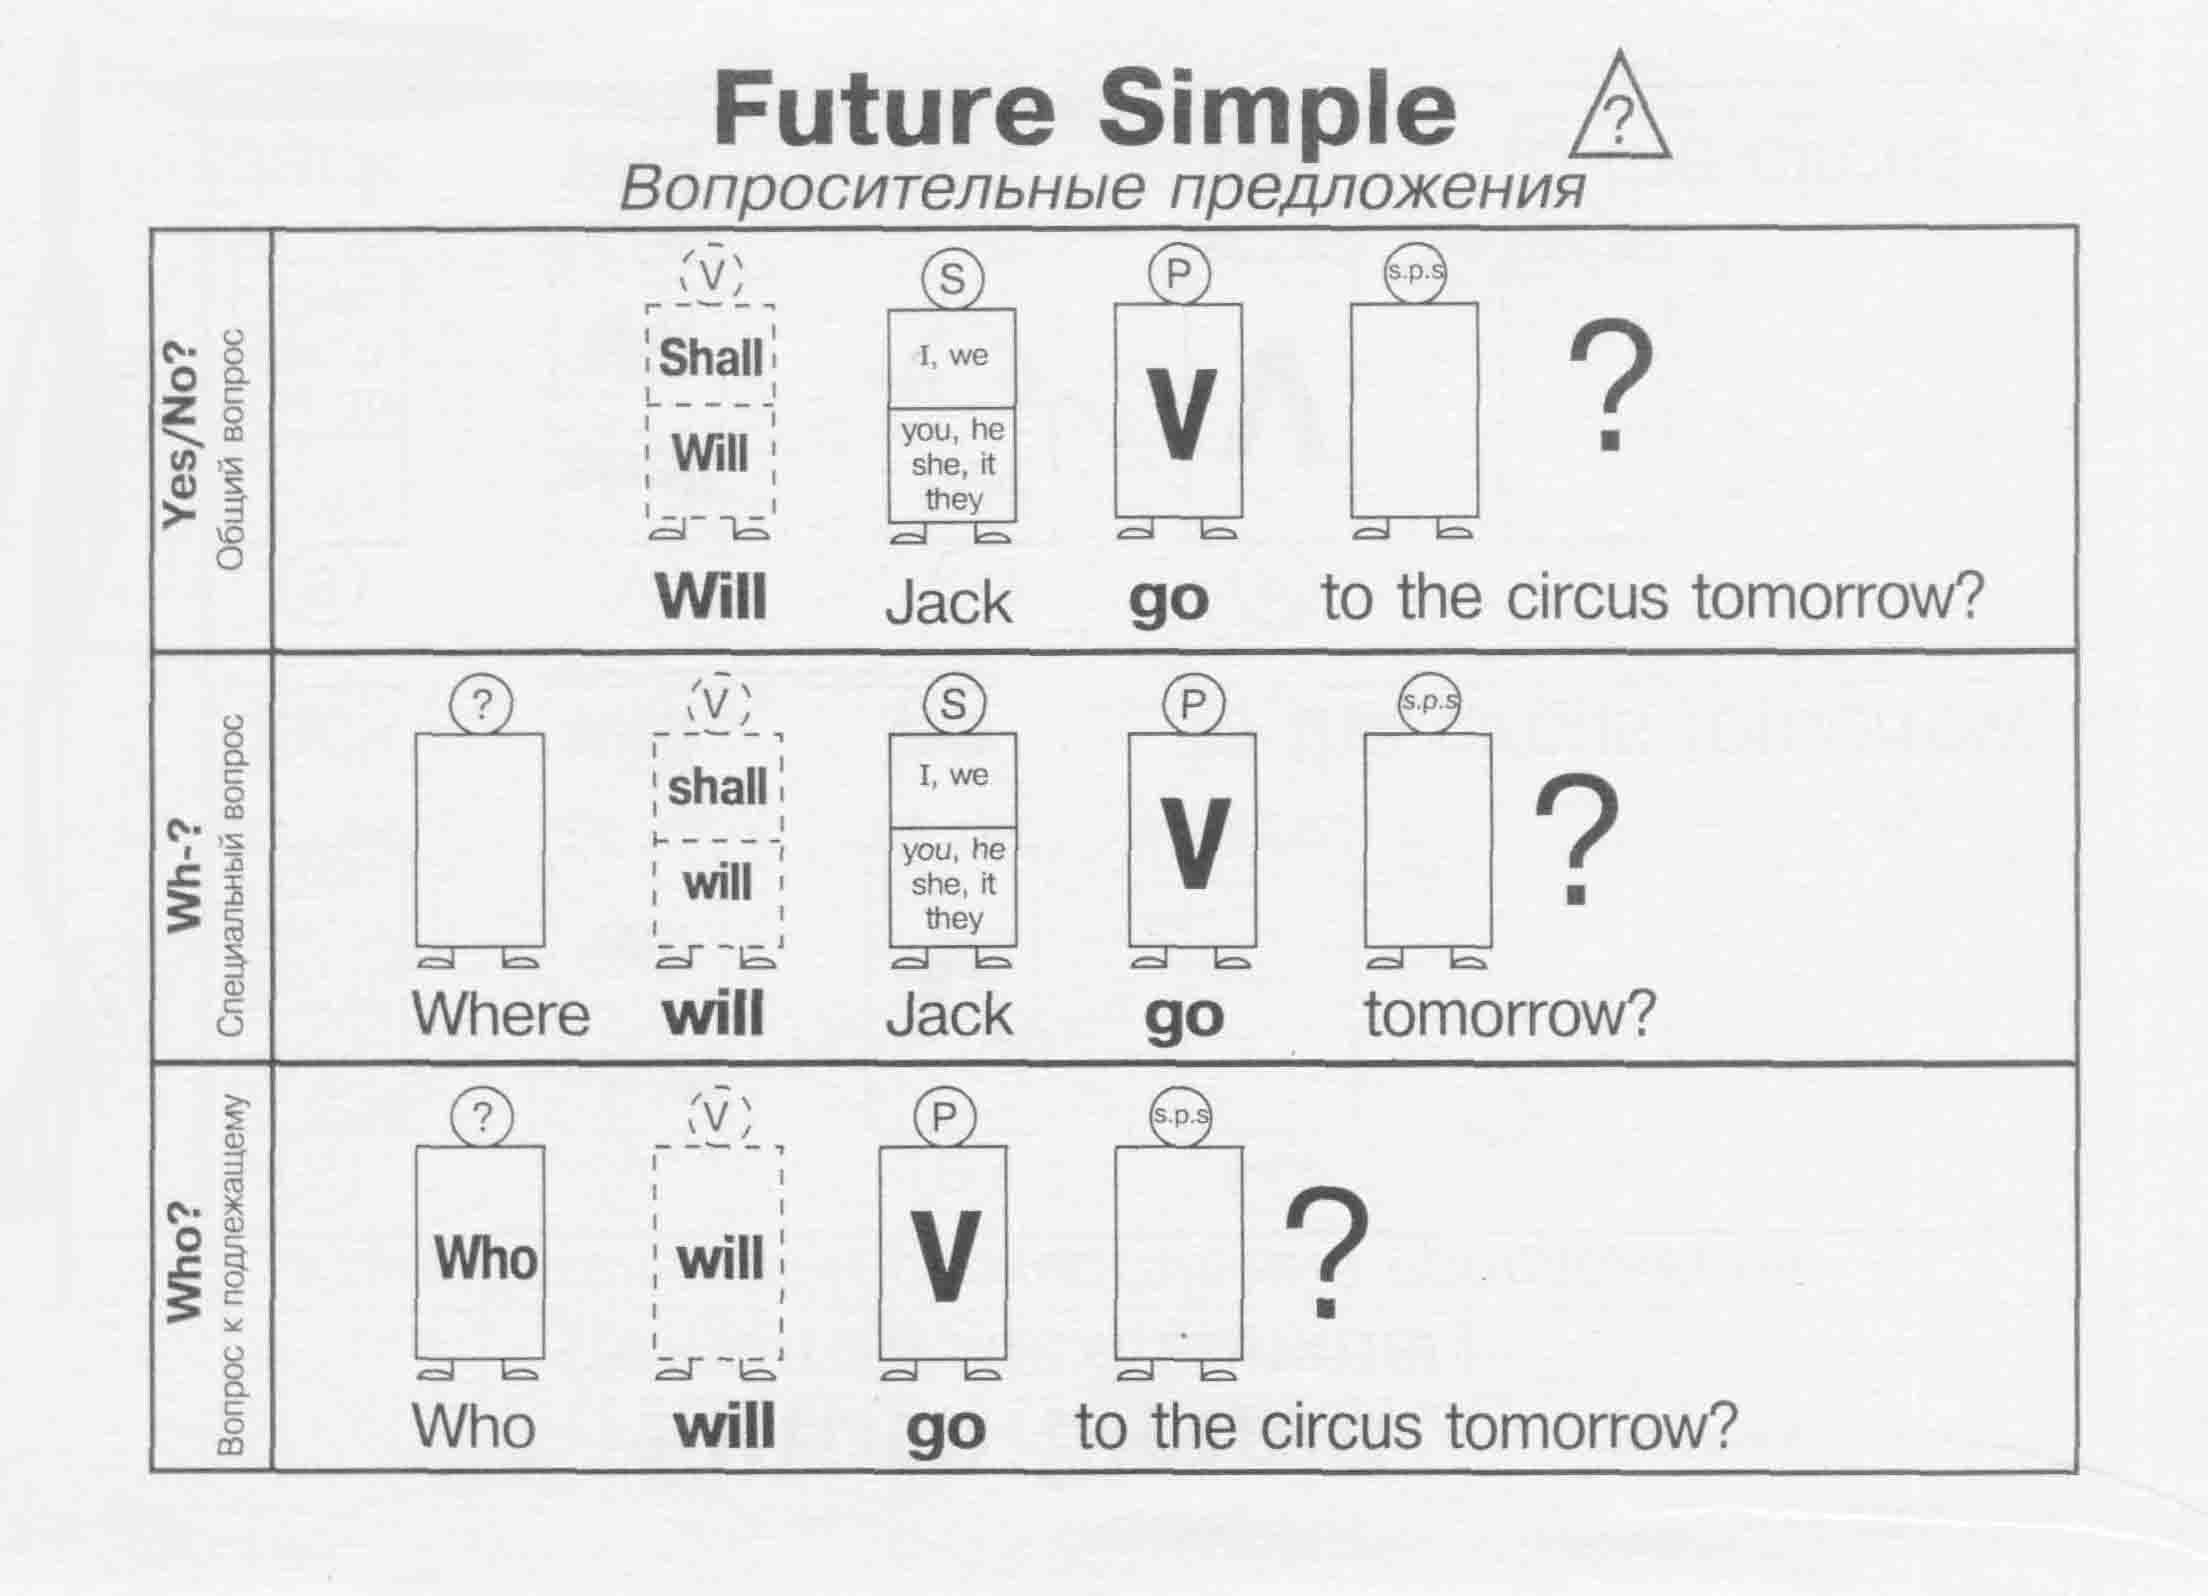 Вопросительное предложение в будущем. Future simple схема построения предложения. Схема составления предложения в Future simple. Future simple вопросительные предложения. Future simple в английском языке таблица.